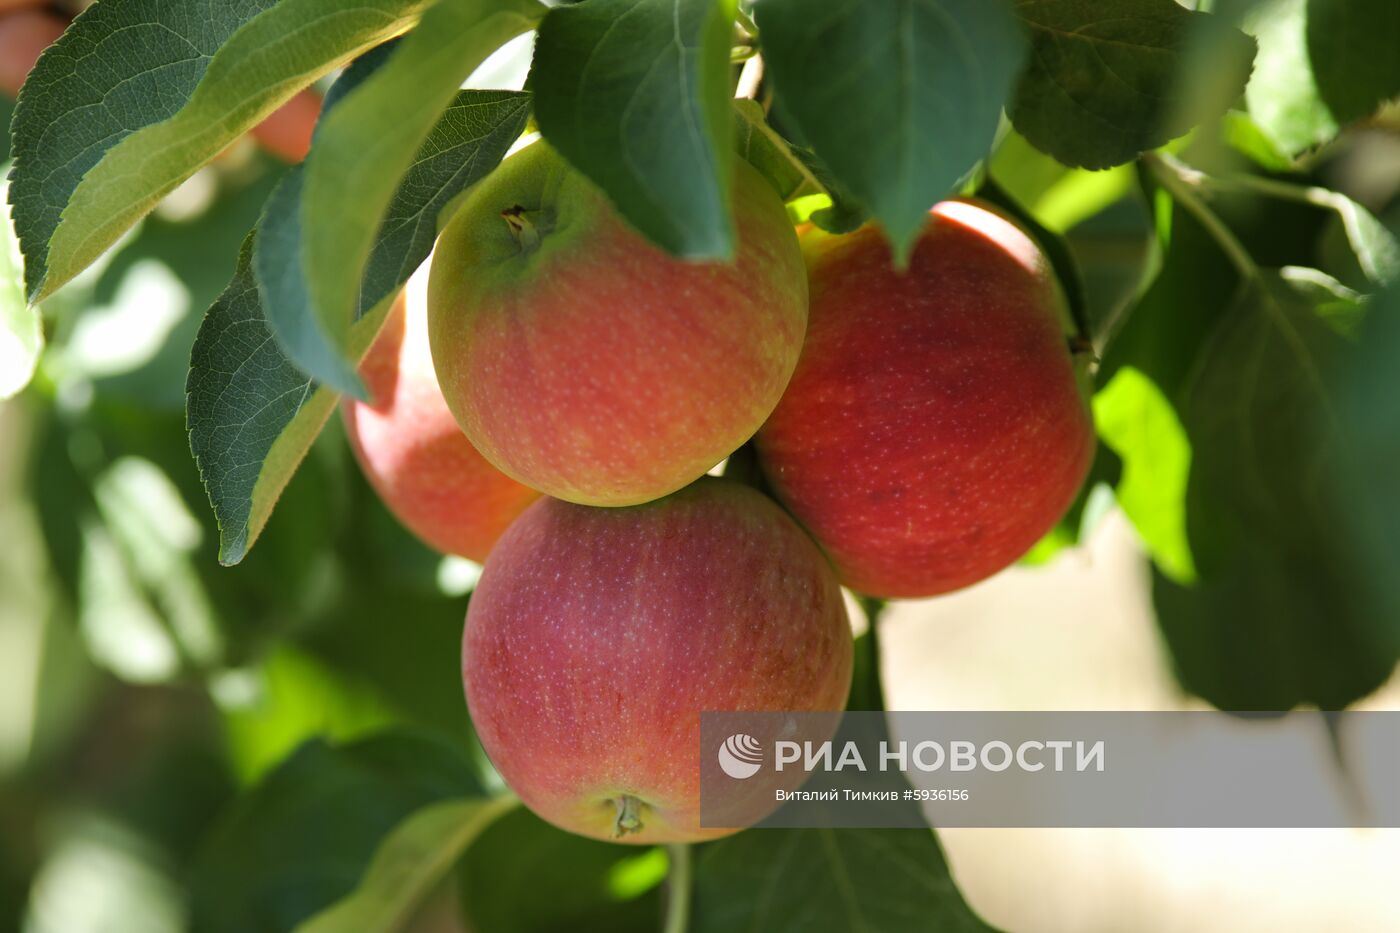 Сбор урожая яблок в Краснодарском крае